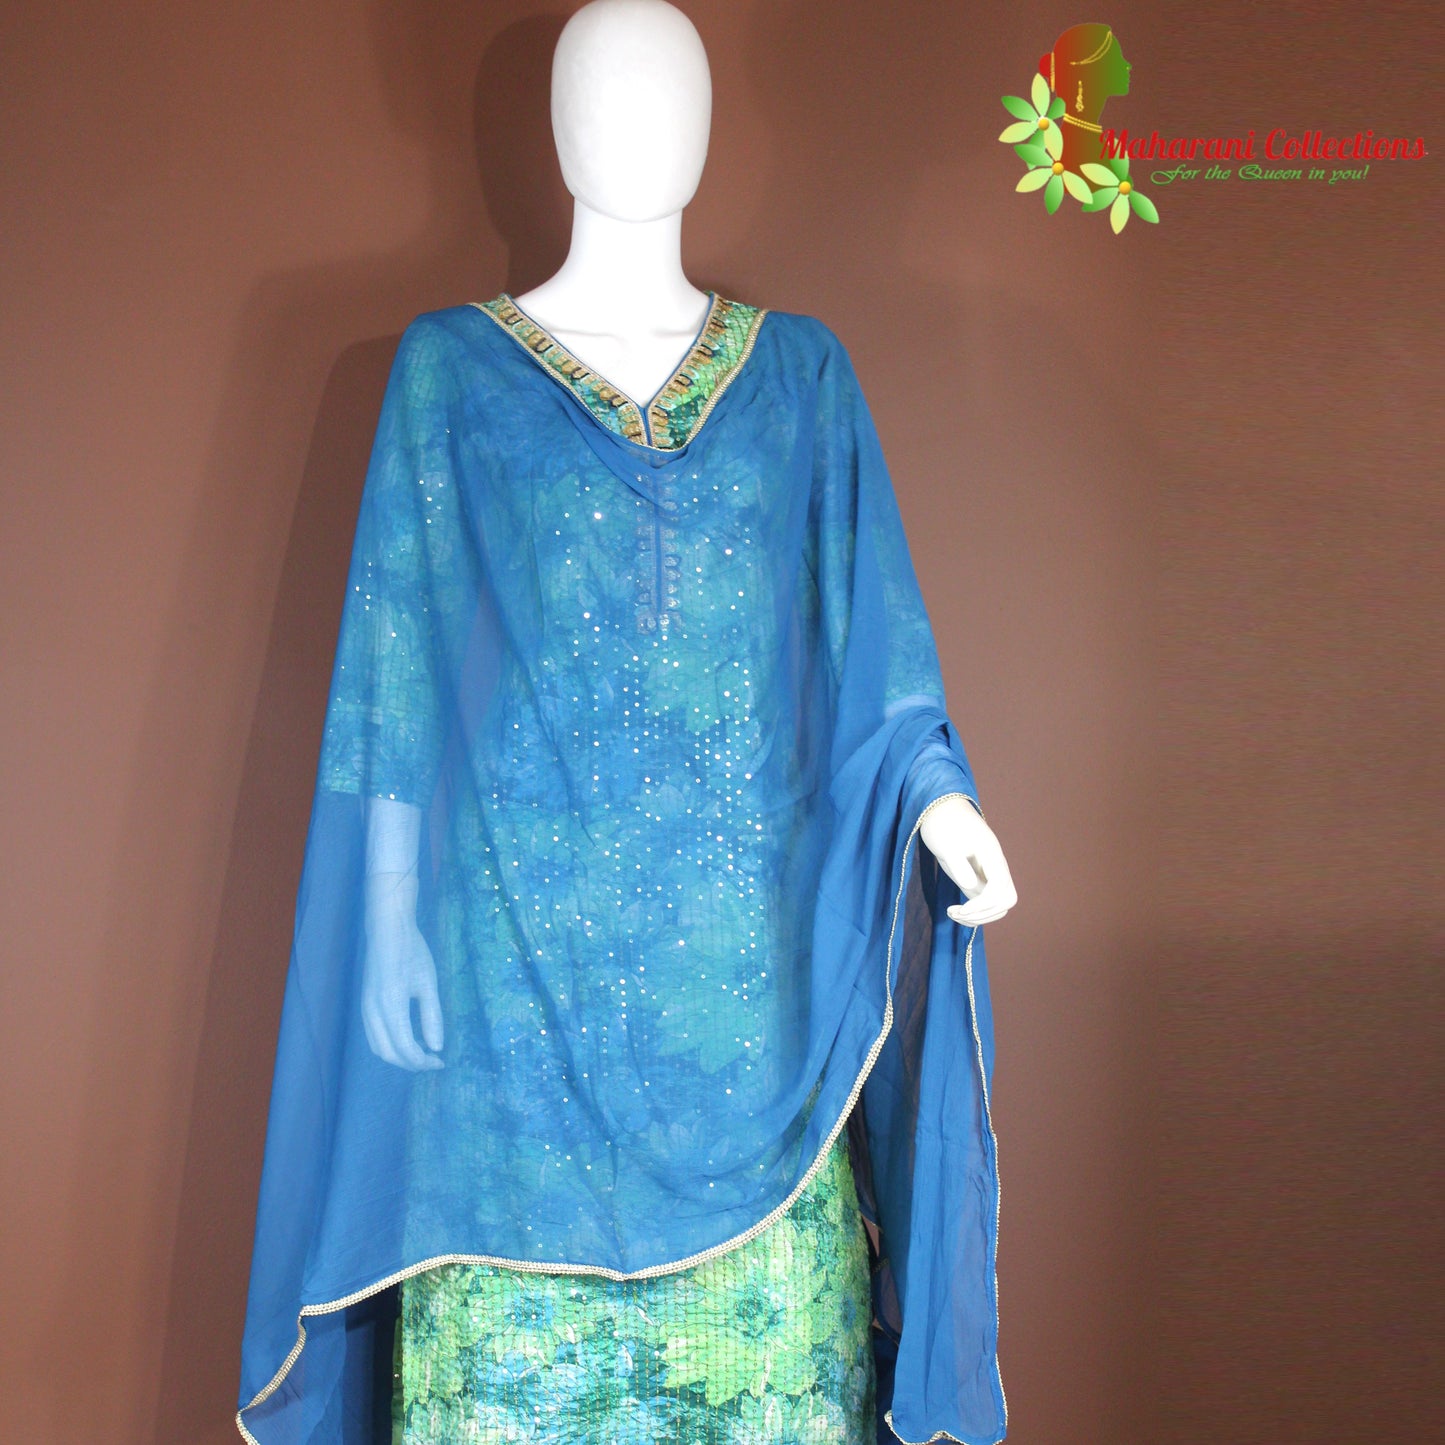 Maharani's Pant suit - Soft Cotton - Turquoise Blue (S, M)